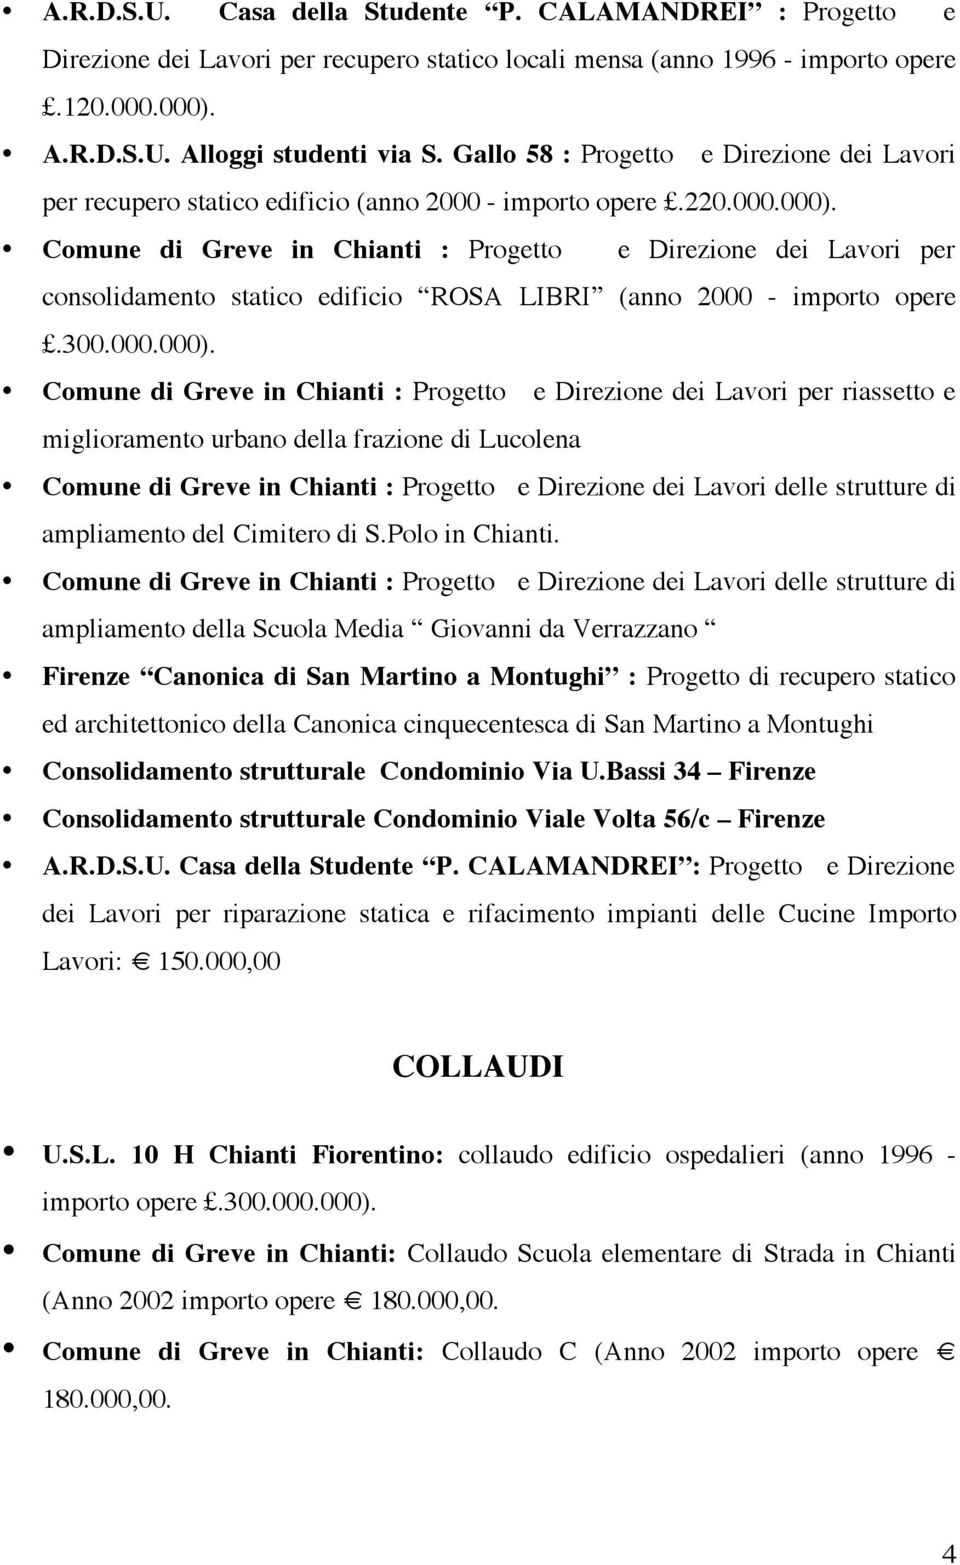 Comune di Greve in Chianti : Progetto e Direzione dei Lavori per consolidamento statico edificio ROSA LIBRI (anno 2000 - importo opere.300.000.000).